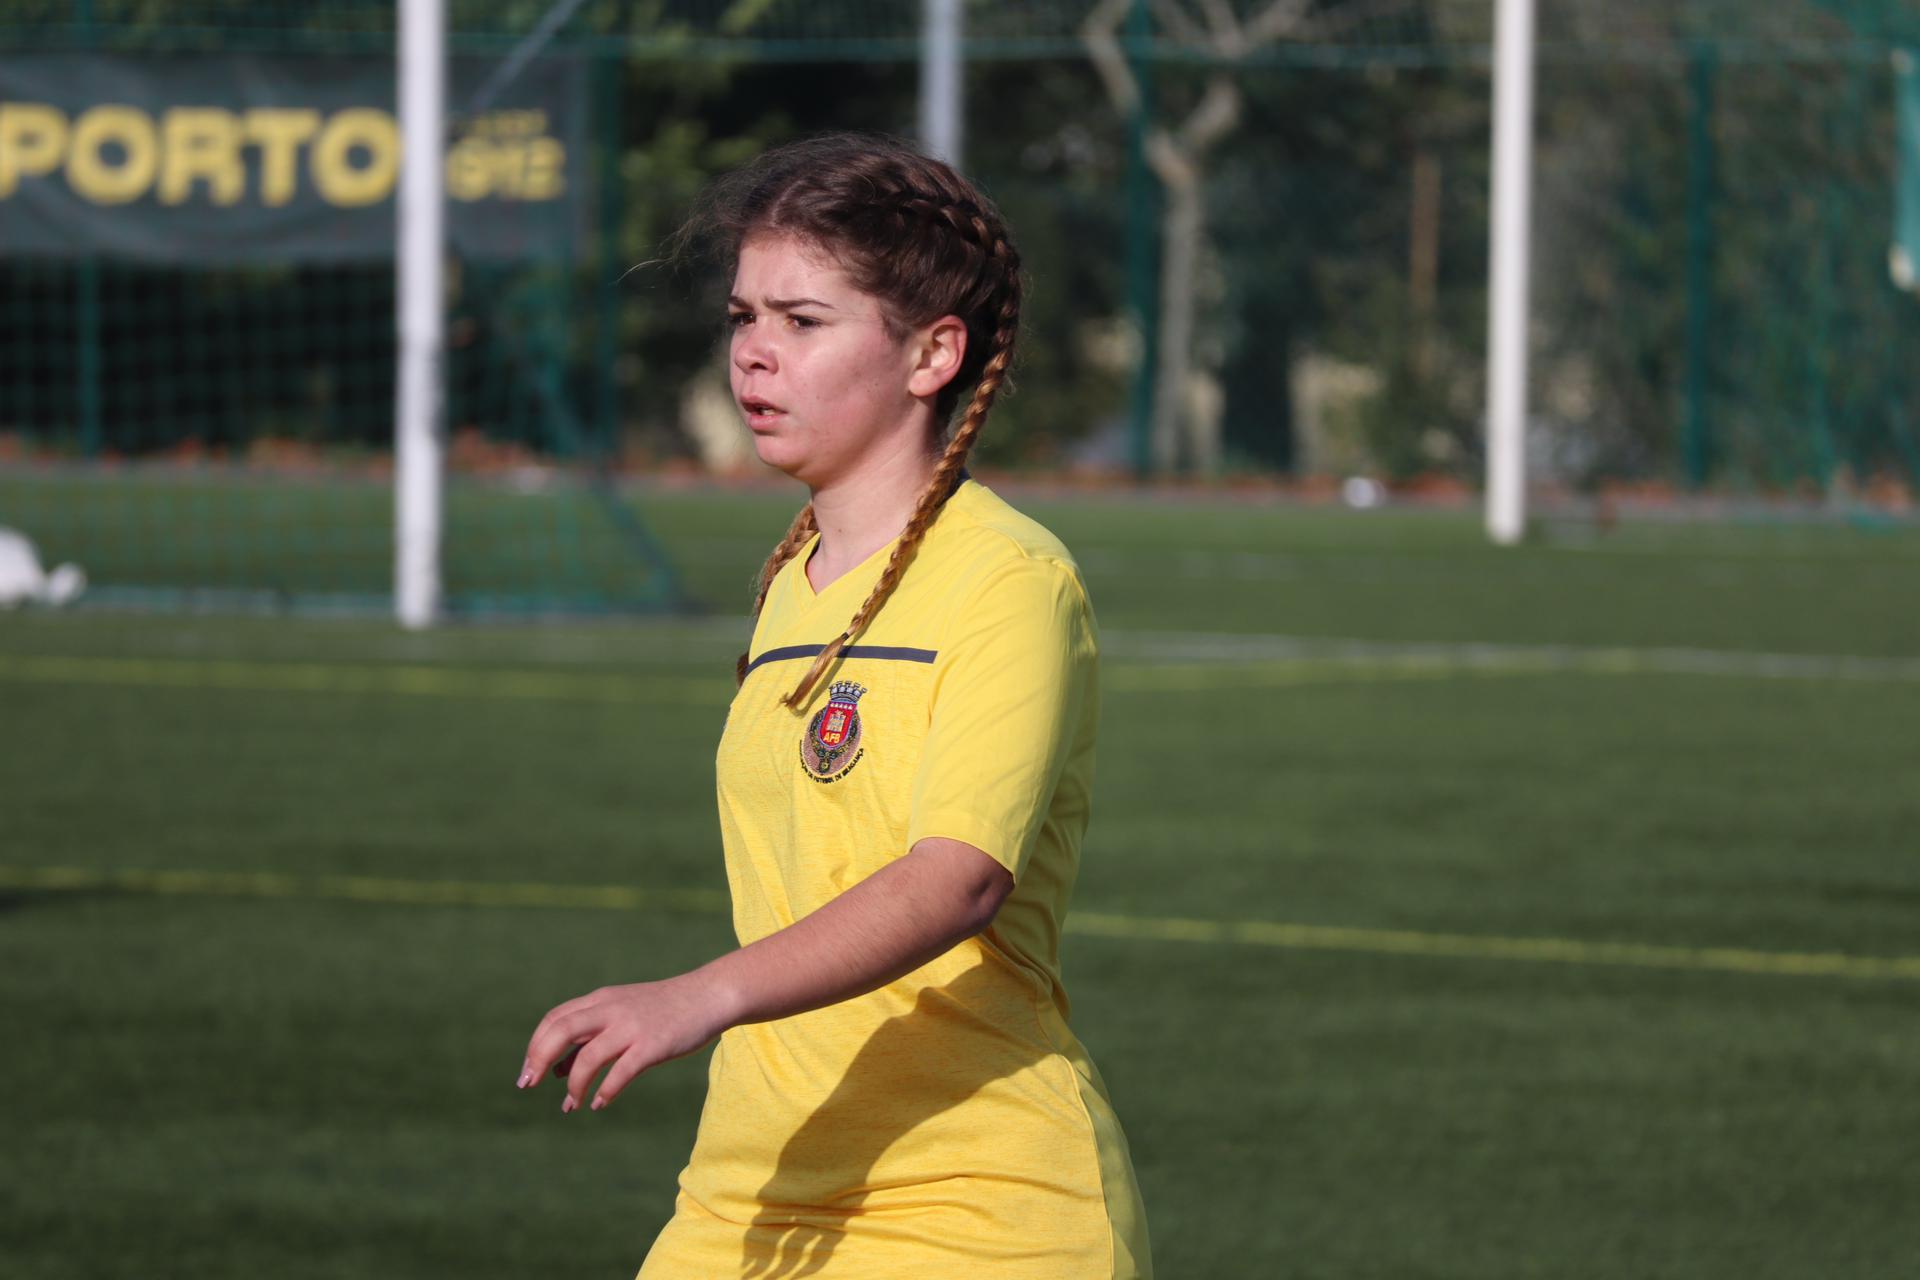 Torre de Moncorvo recebe torneio de Futebol Feminino Sub-14 e Sub-16